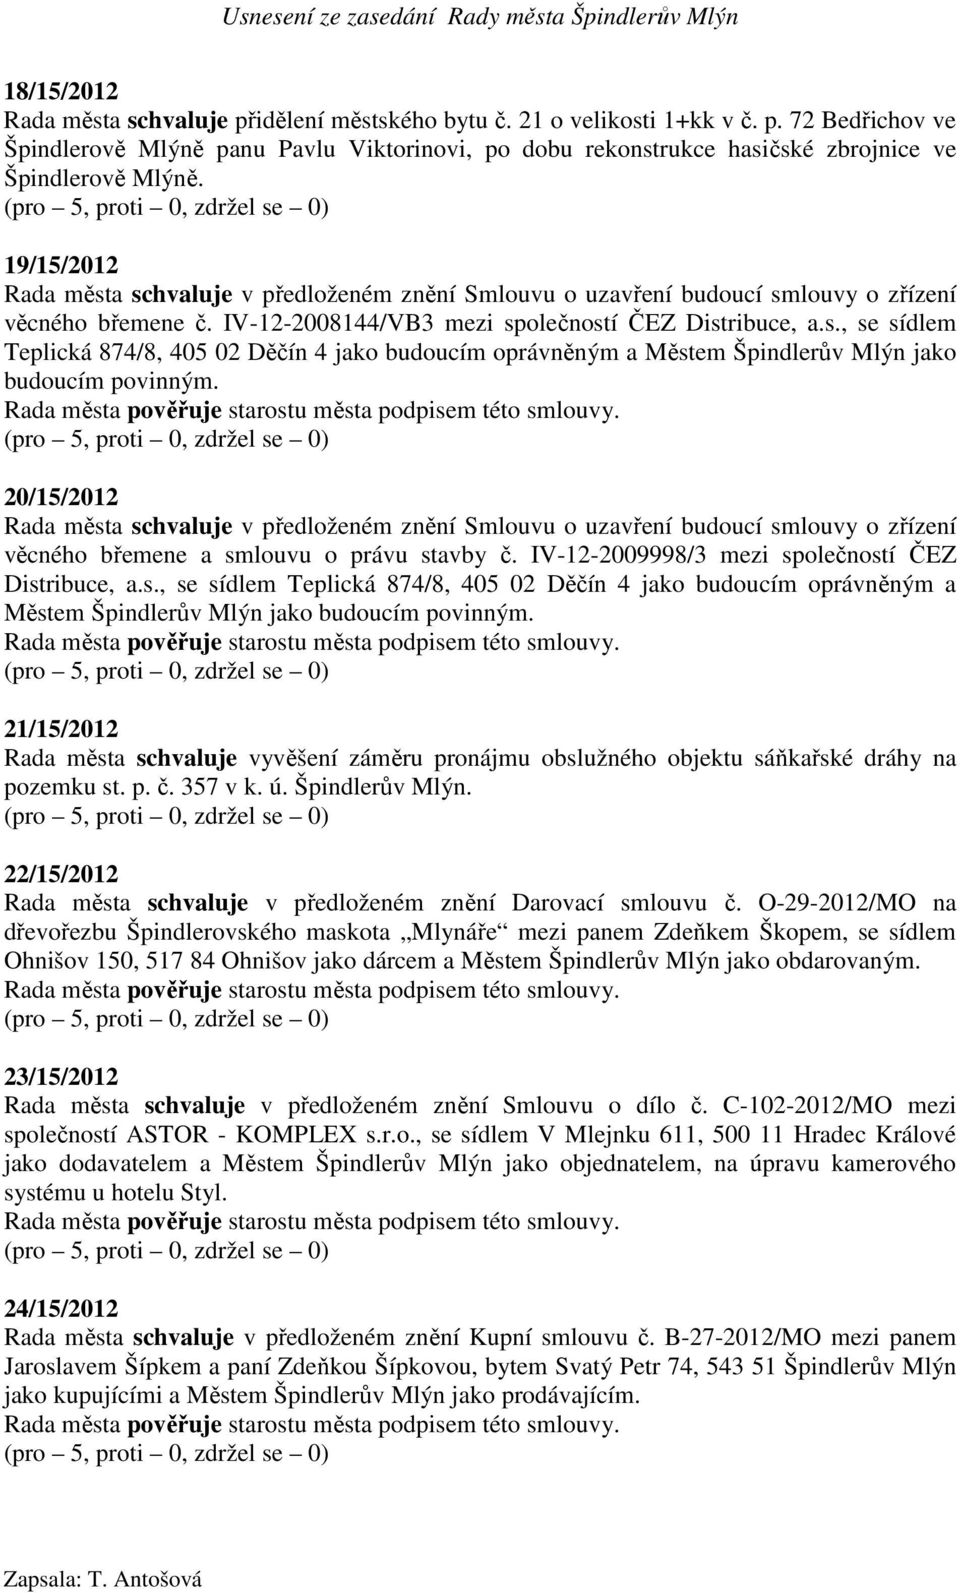 20/15/2012 Rada města schvaluje v předloženém znění Smlouvu o uzavření budoucí smlouvy o zřízení věcného břemene a smlouvu o právu stavby č. IV-12-2009998/3 mezi společností ČEZ Distribuce, a.s., se sídlem Teplická 874/8, 405 02 Děčín 4 jako budoucím oprávněným a Městem Špindlerův Mlýn jako budoucím povinným.